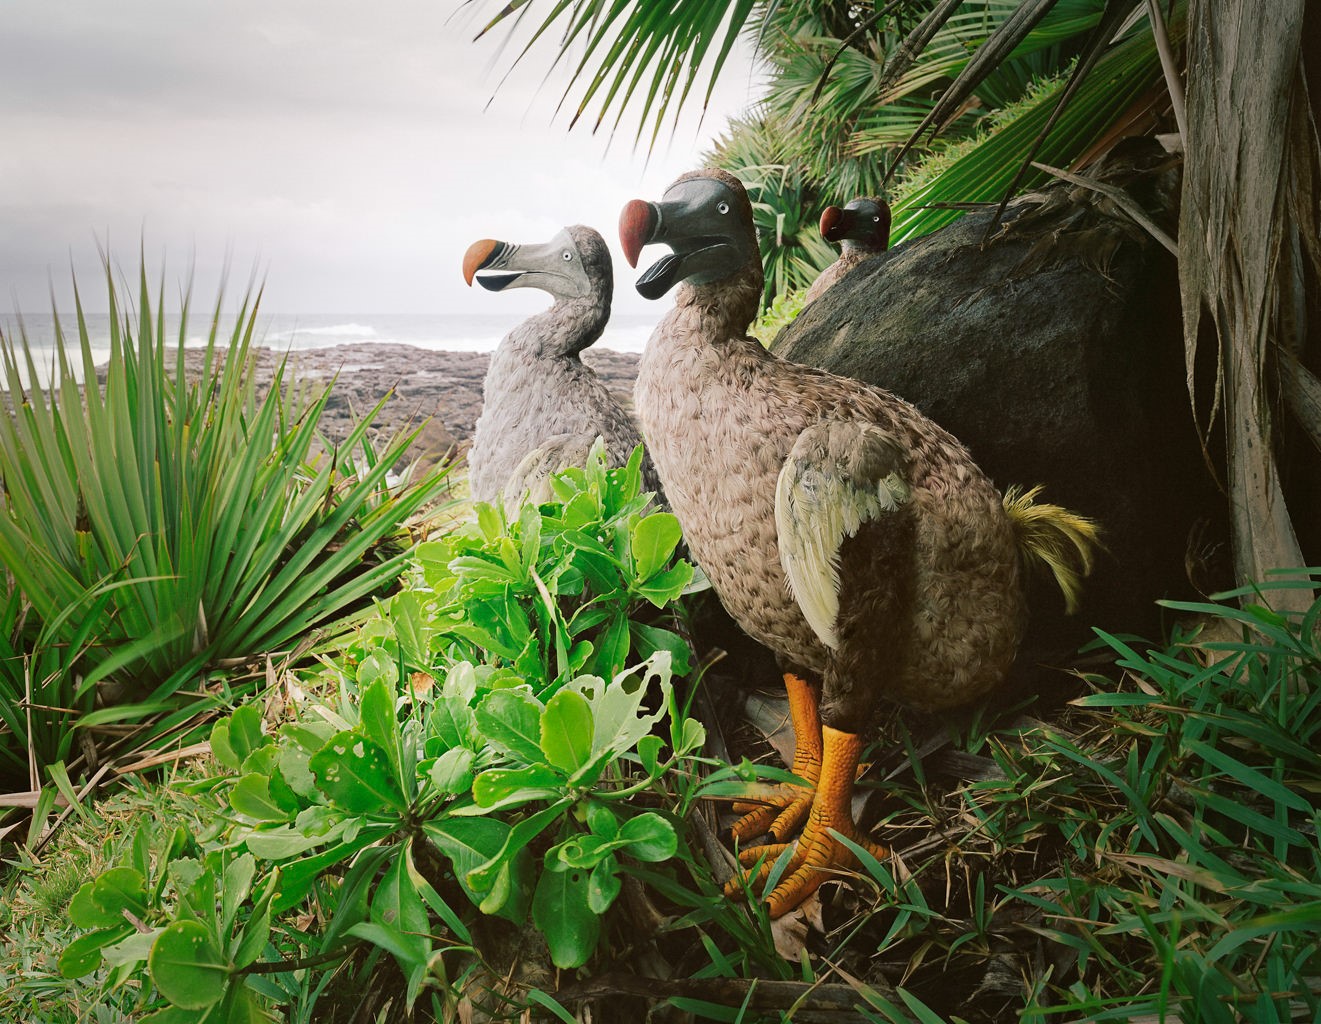 Sculptures of extinct Dodo birds